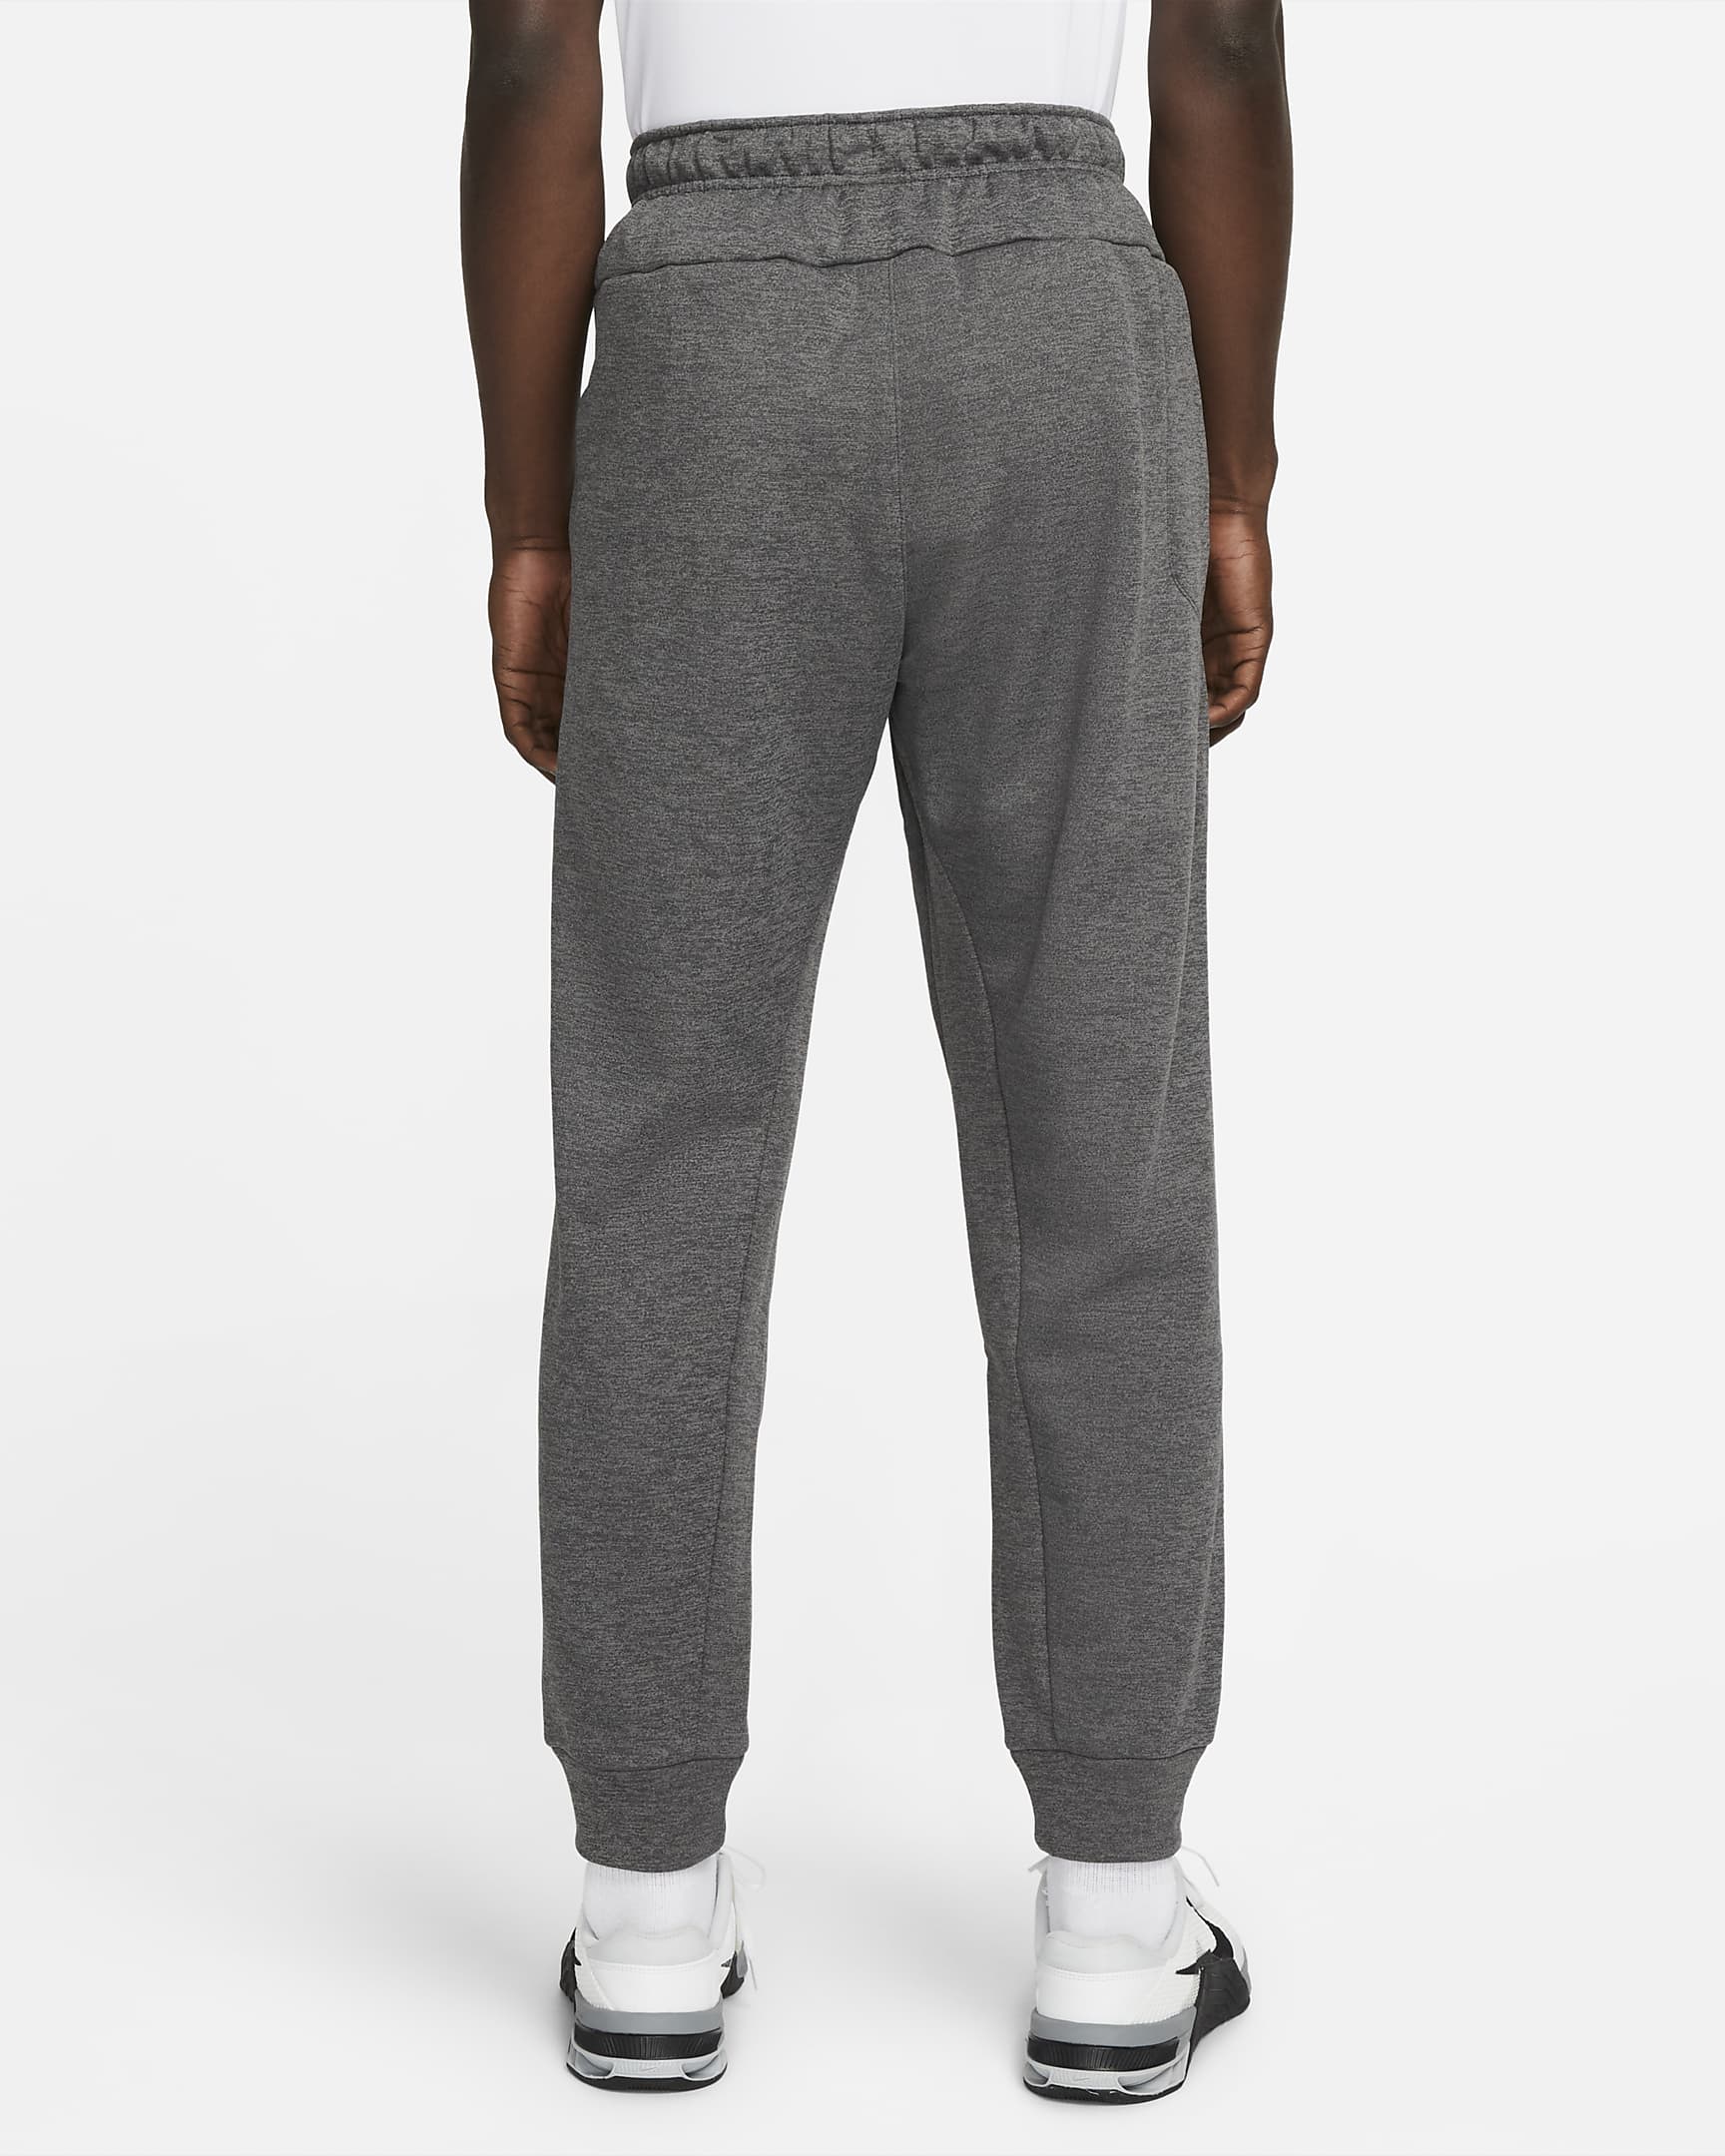 Pantalon Nike Therma - Grau